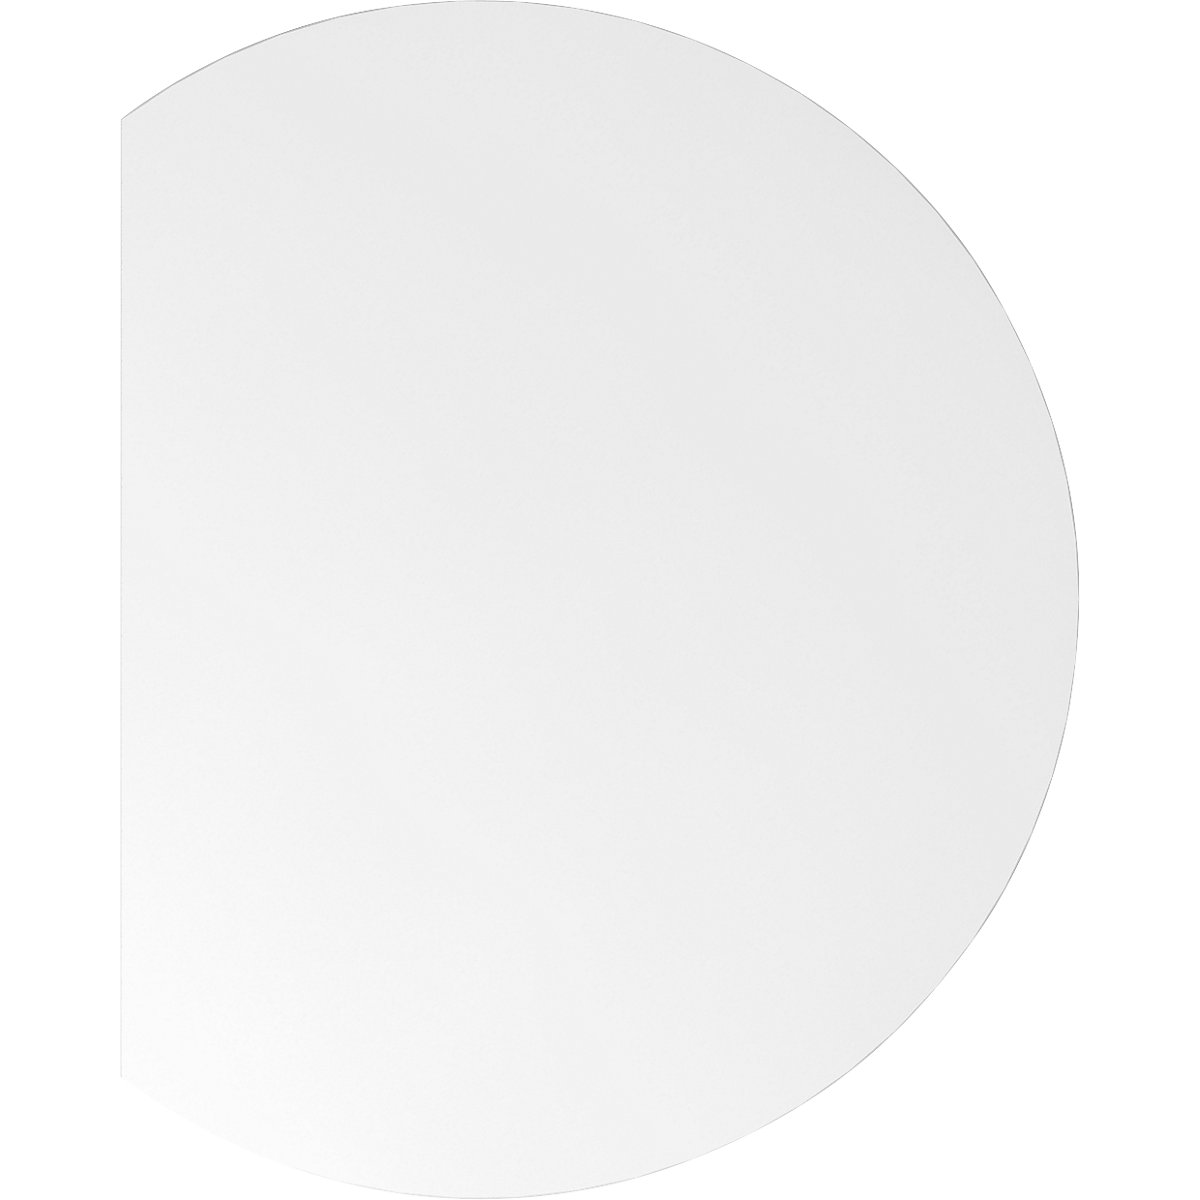 Dogradni stol VERA-ZWO, s mogućnošću namještanja visine, ŠxD 800 x 1000 mm, ploča u bijeloj boji, postolje u boji grafita-4